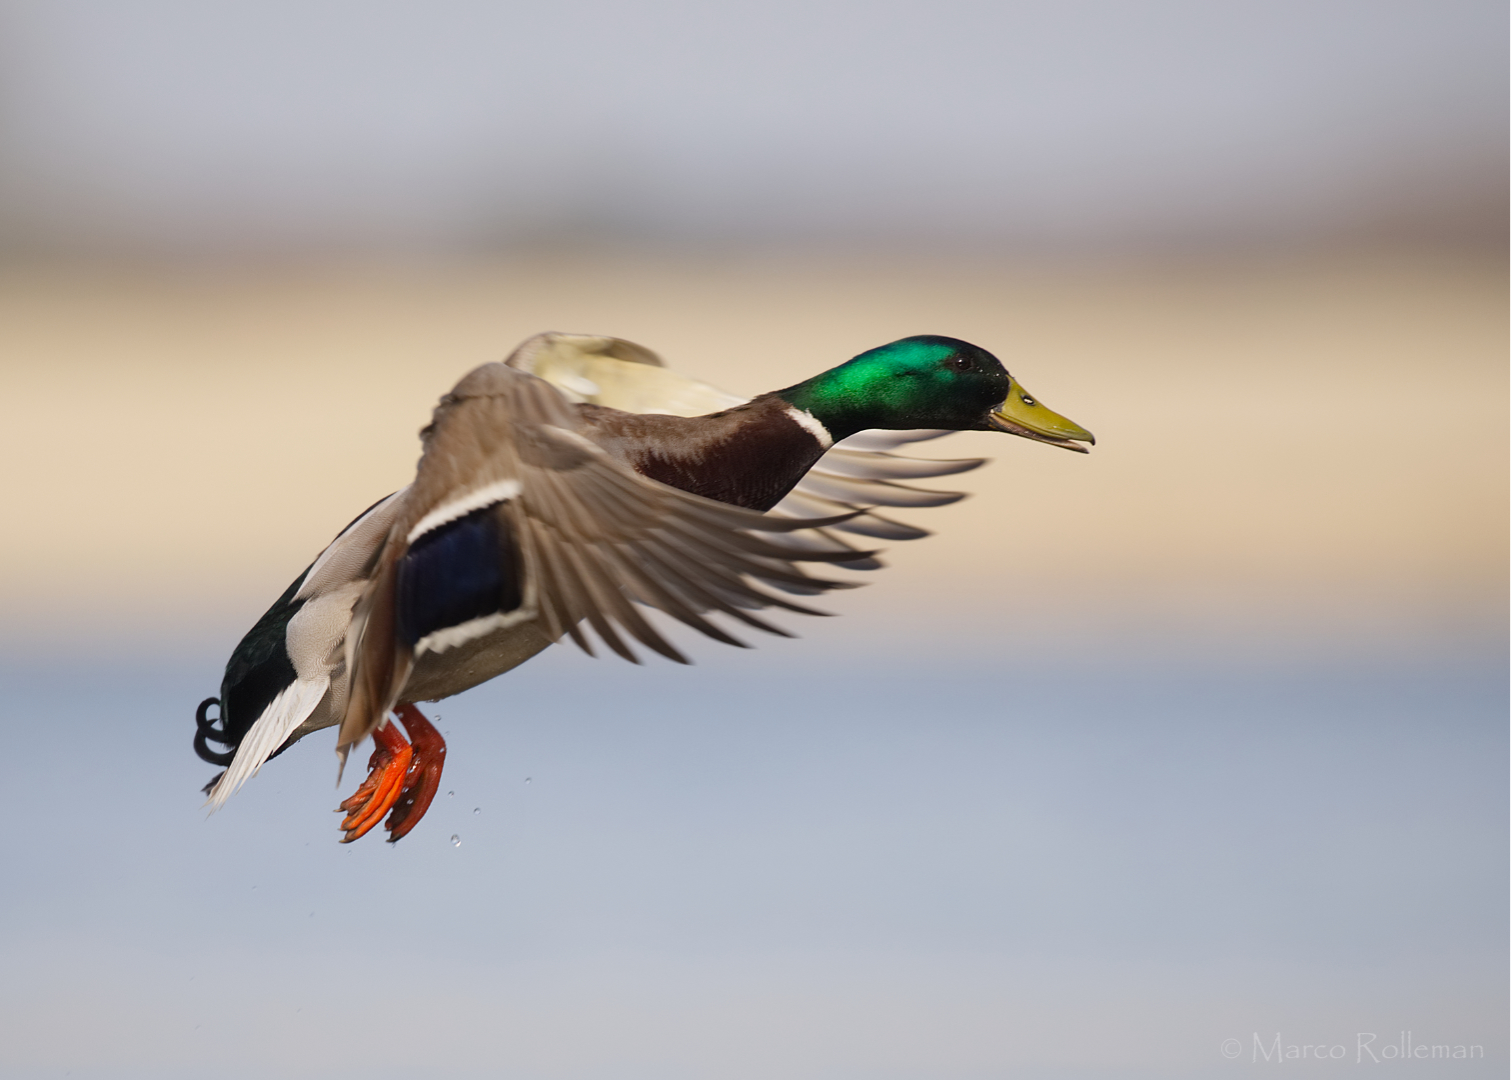 Wild duck in flight ddn